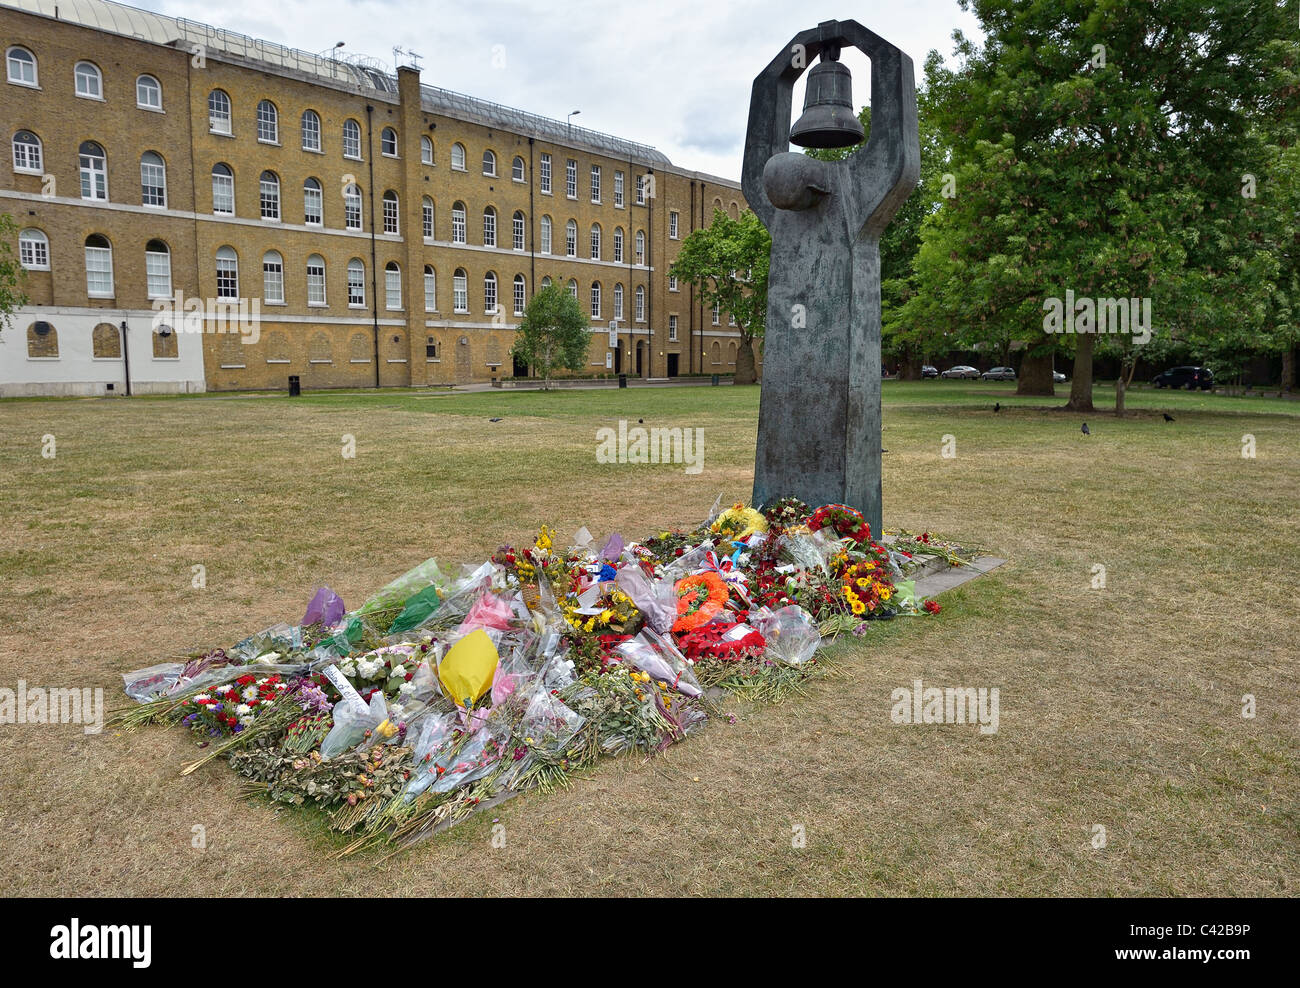 Monument commémoratif de guerre soviétique qui s'est levé à Geraldine Mary Harmsworth Park, Imperial War Museum, Londres, Angleterre, Royaume-Uni, depuis 1999. Banque D'Images